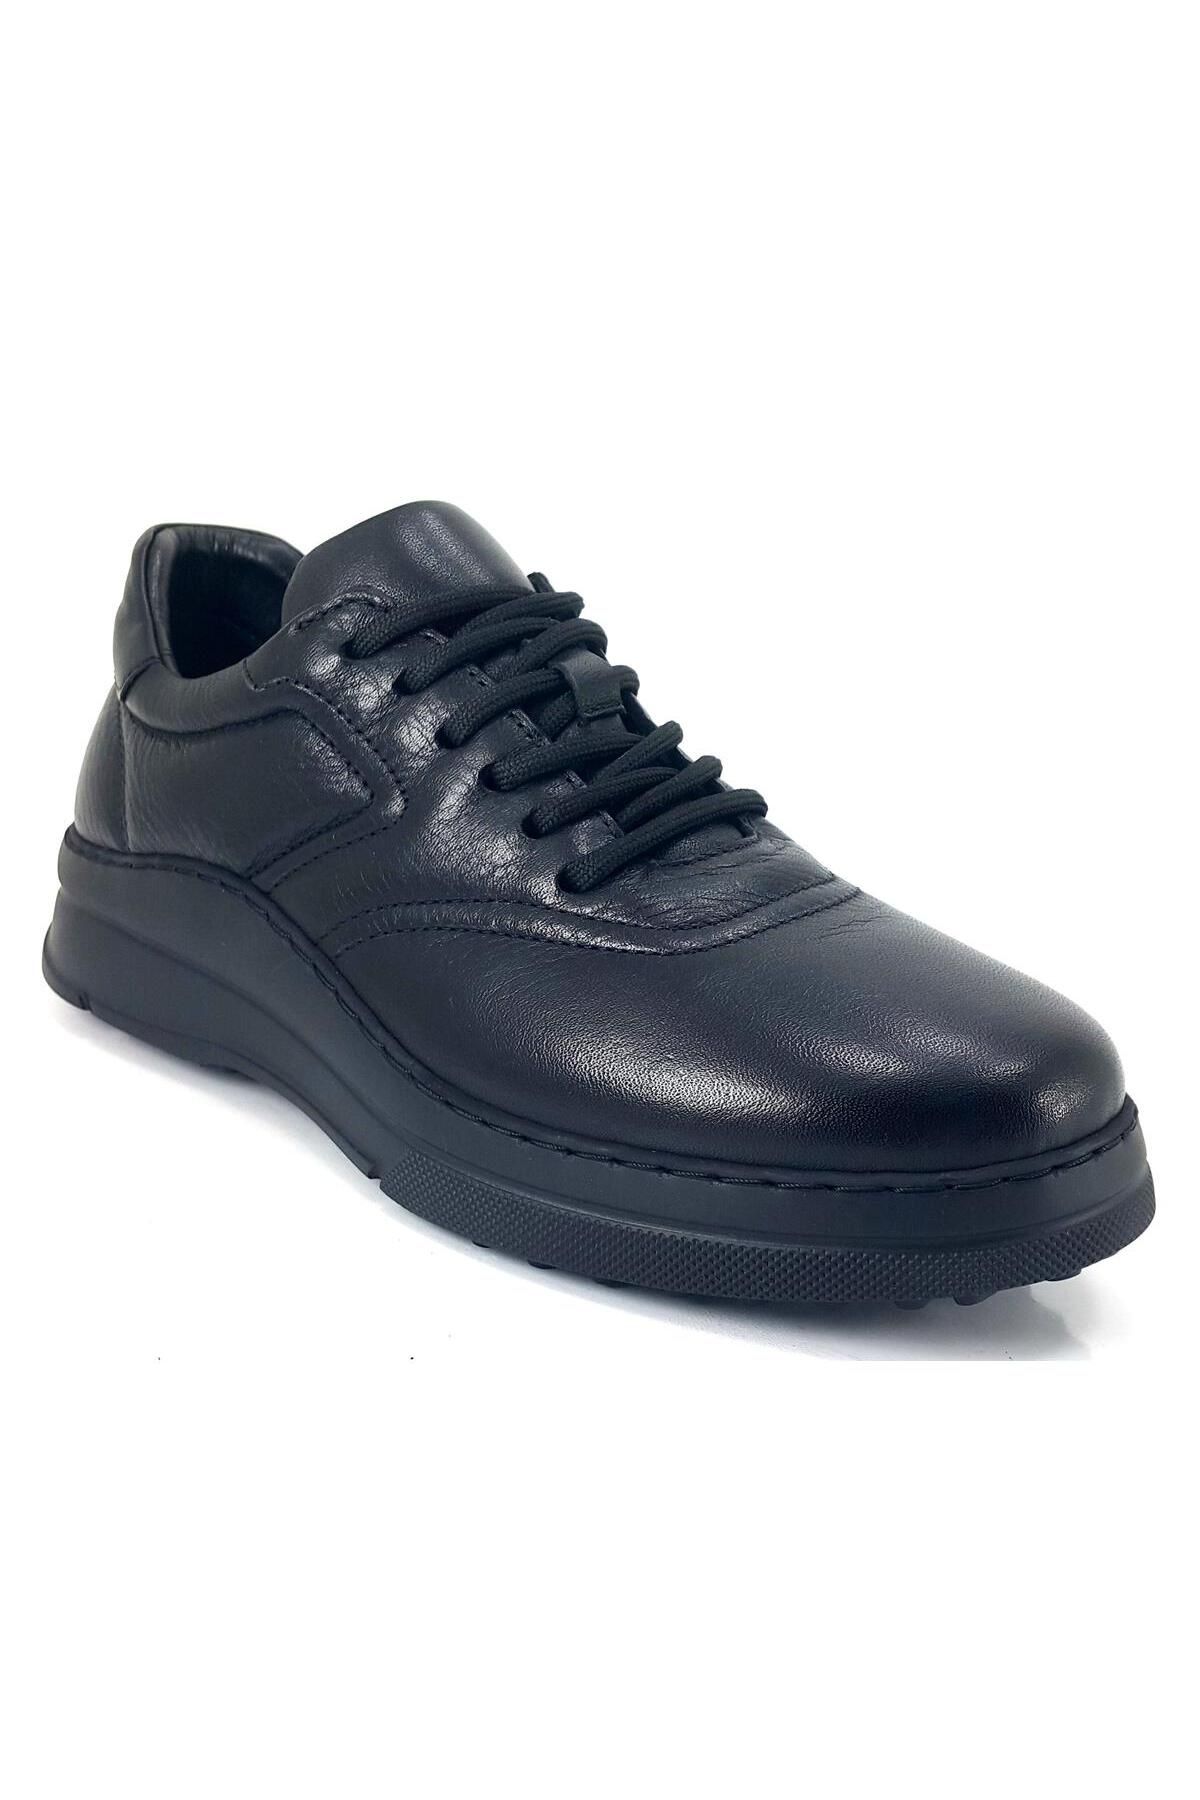 Libero 4506 23ka Kadın Günlük Ayakkabı - Siyah